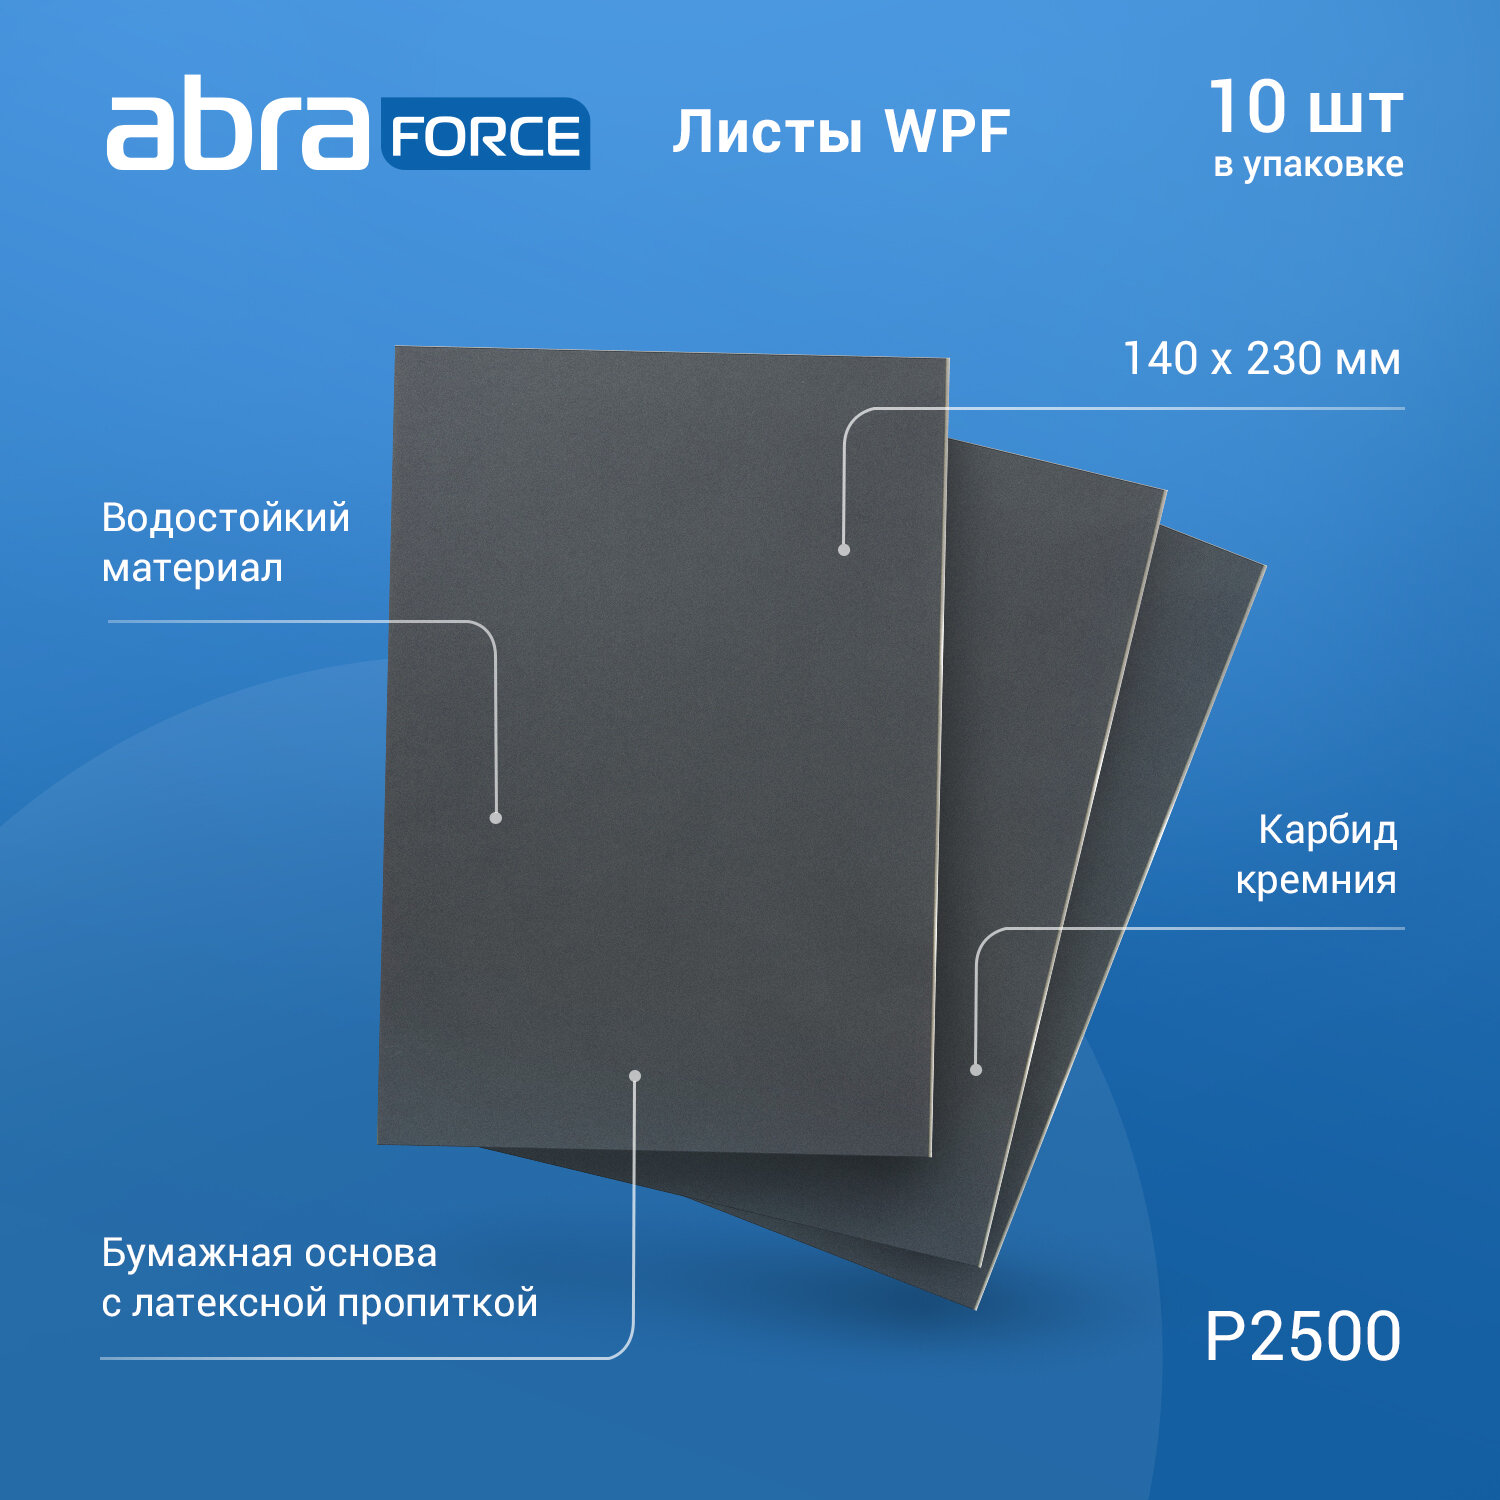 Лист шлифовальный на бумажной основе водостойкий ABRAforce WPF 140x230мм P2500 уп.10 шт.